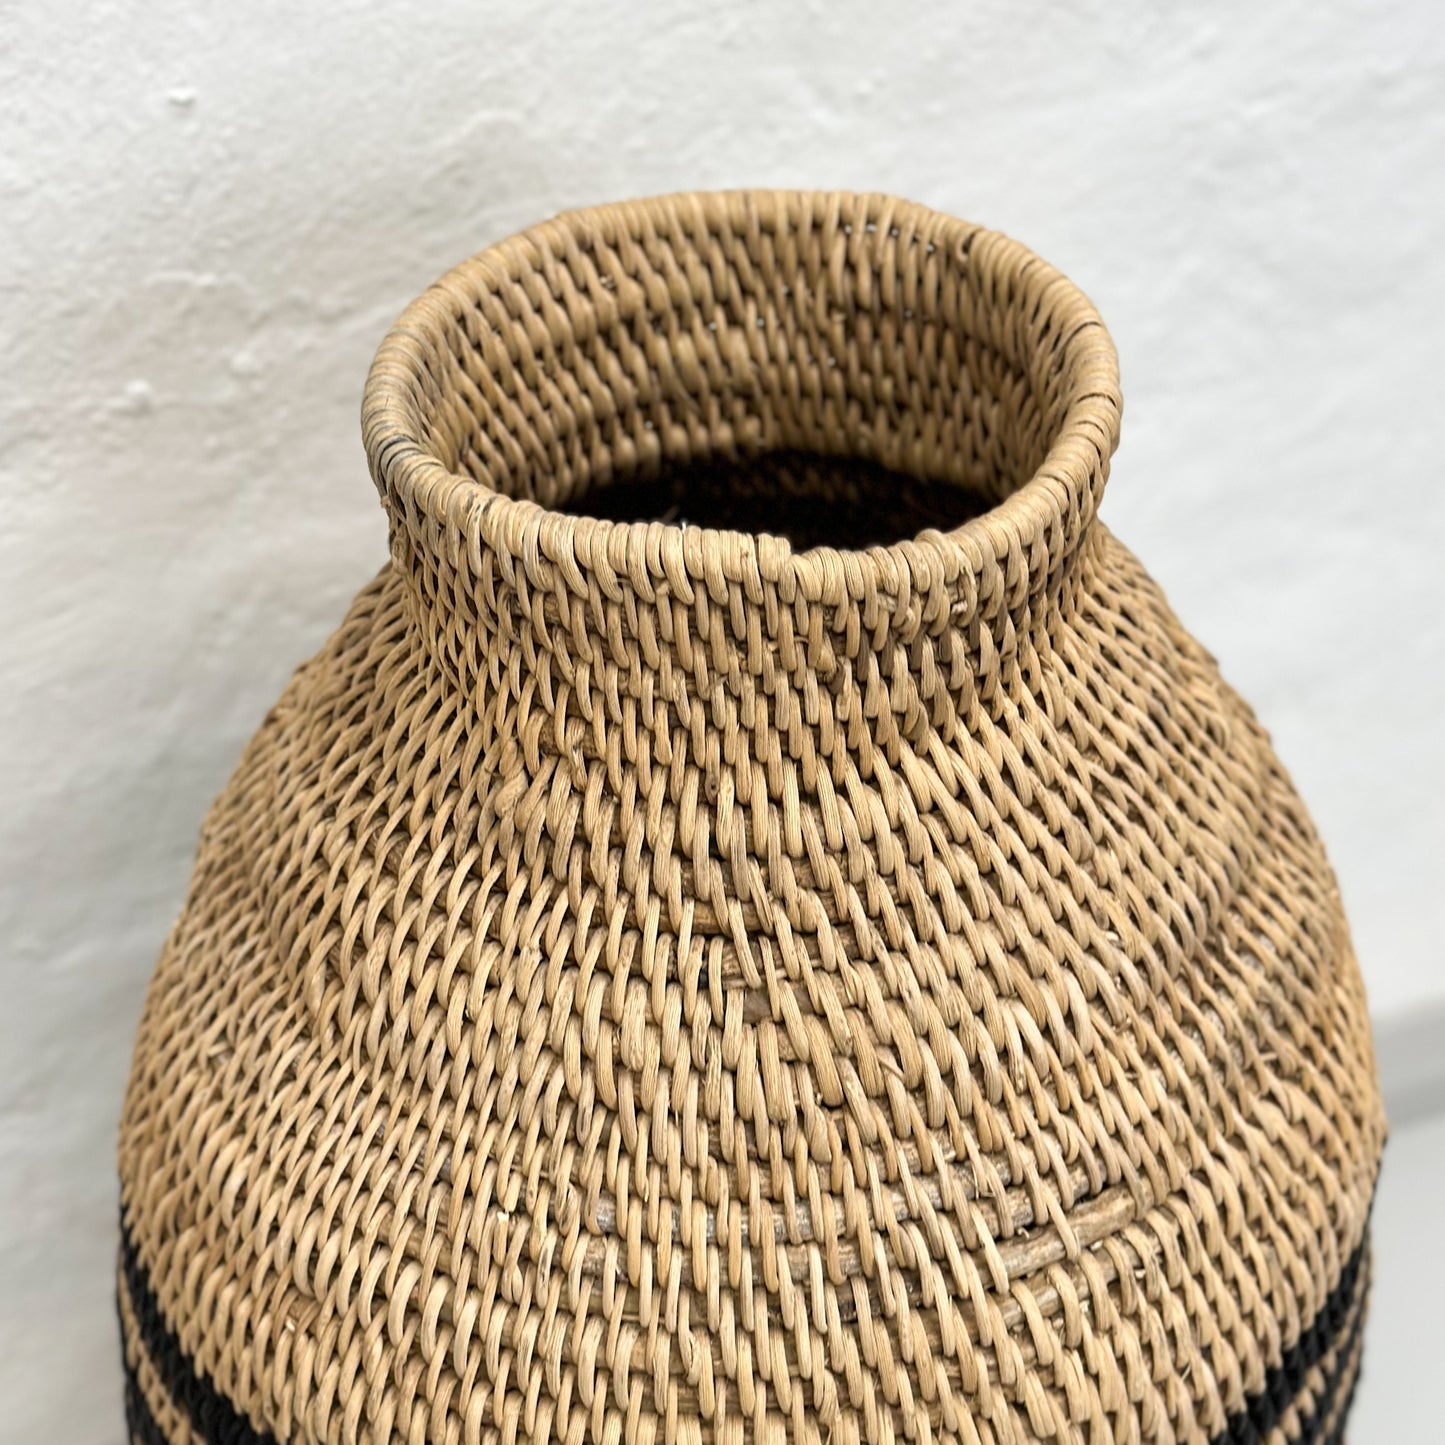 Striped Buhera Basket - Zimbabwe